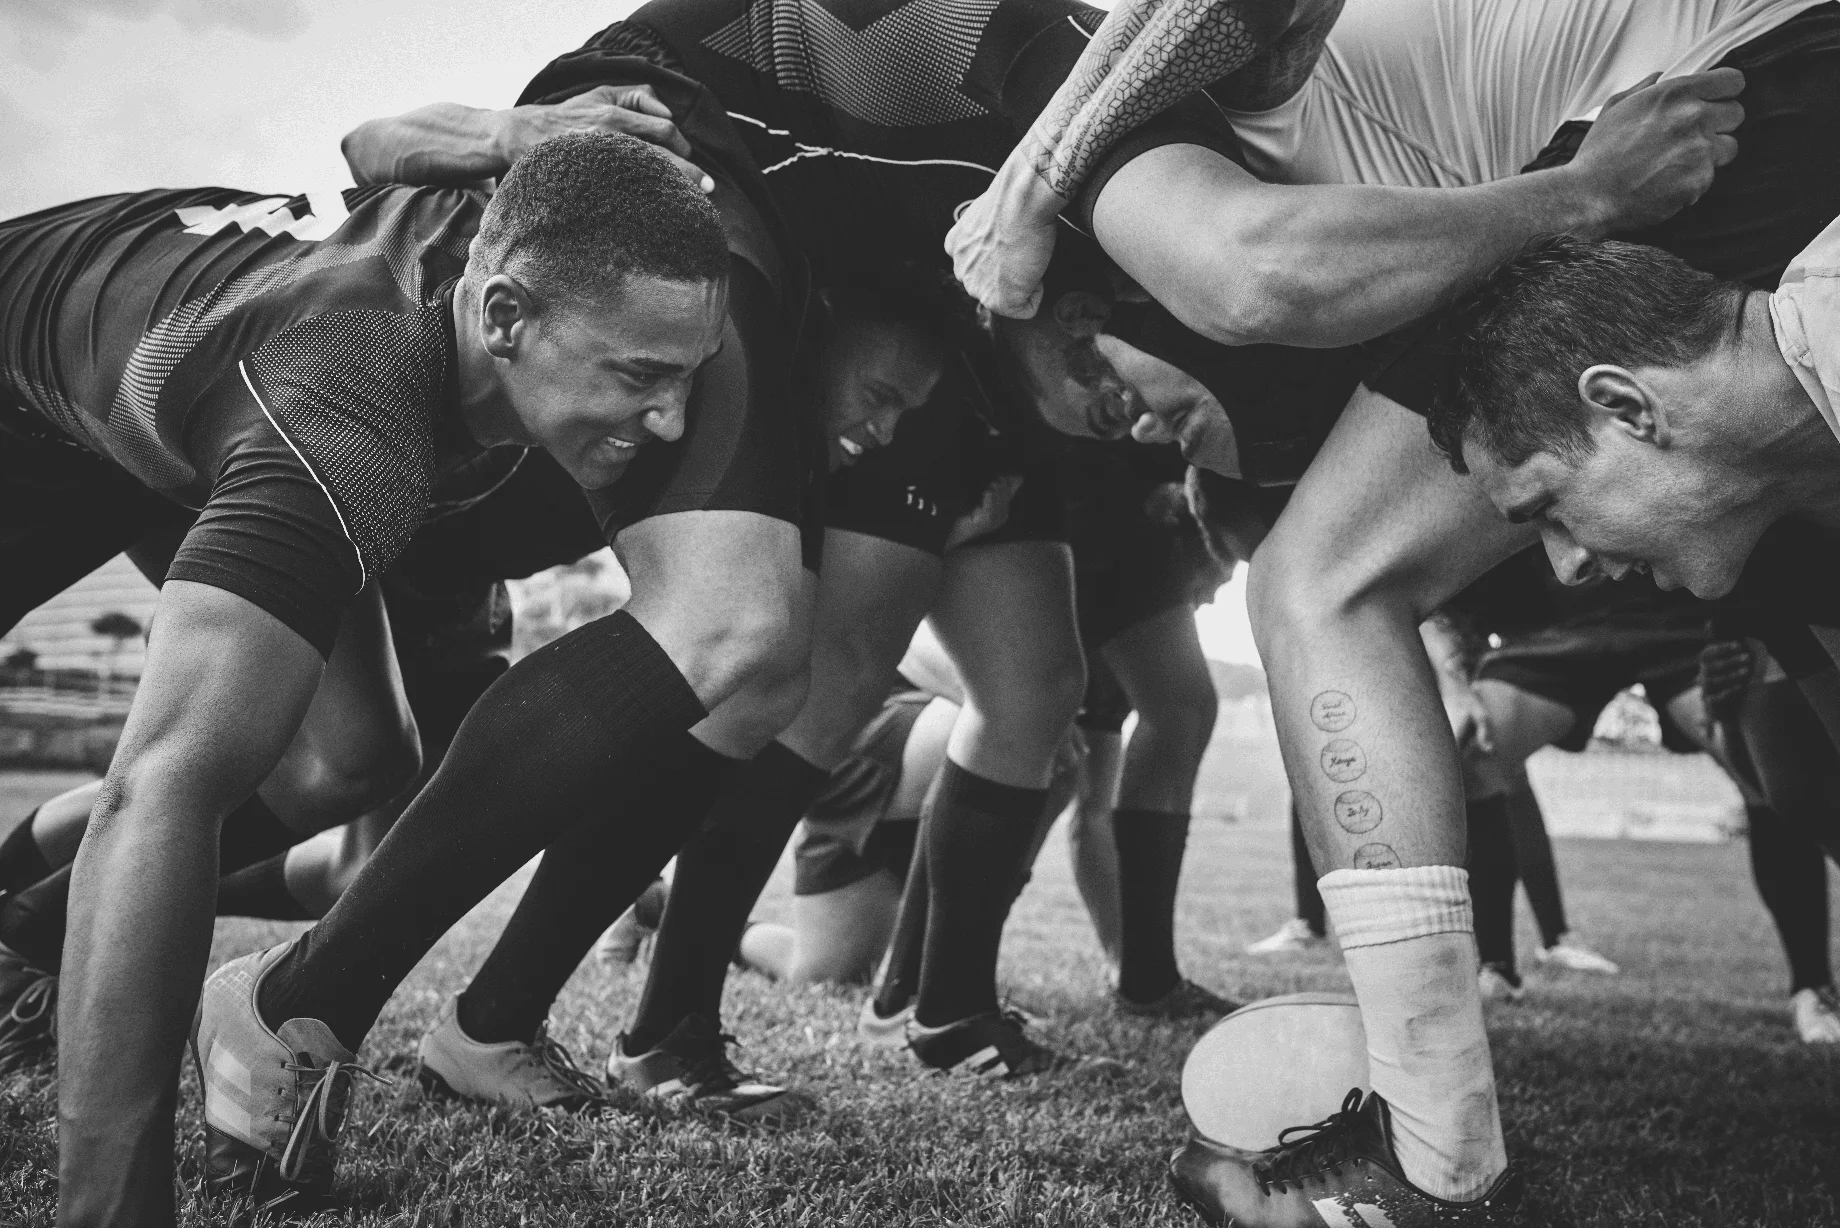 Plan à faible angle de deux jeunes équipes de rugby s'affrontant dans une mêlée lors d'un match de rugby sur un terrain